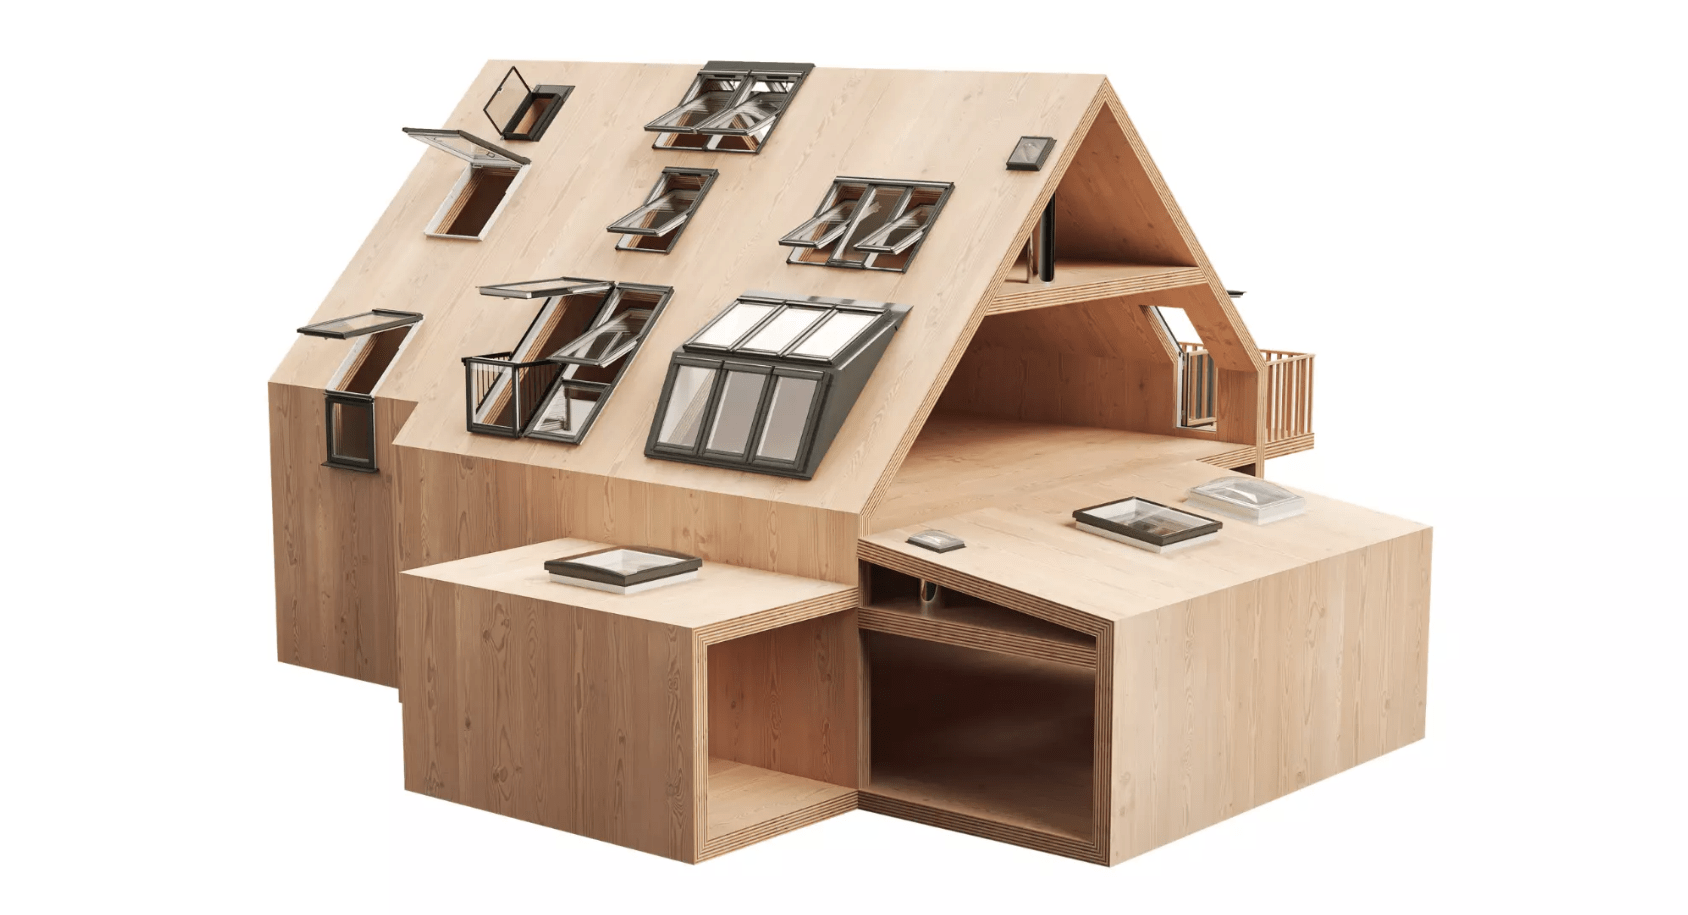 Bauplan eines modernen Hauses mit VELUX Dachflächenfenstern und detailliertem Grundriss.